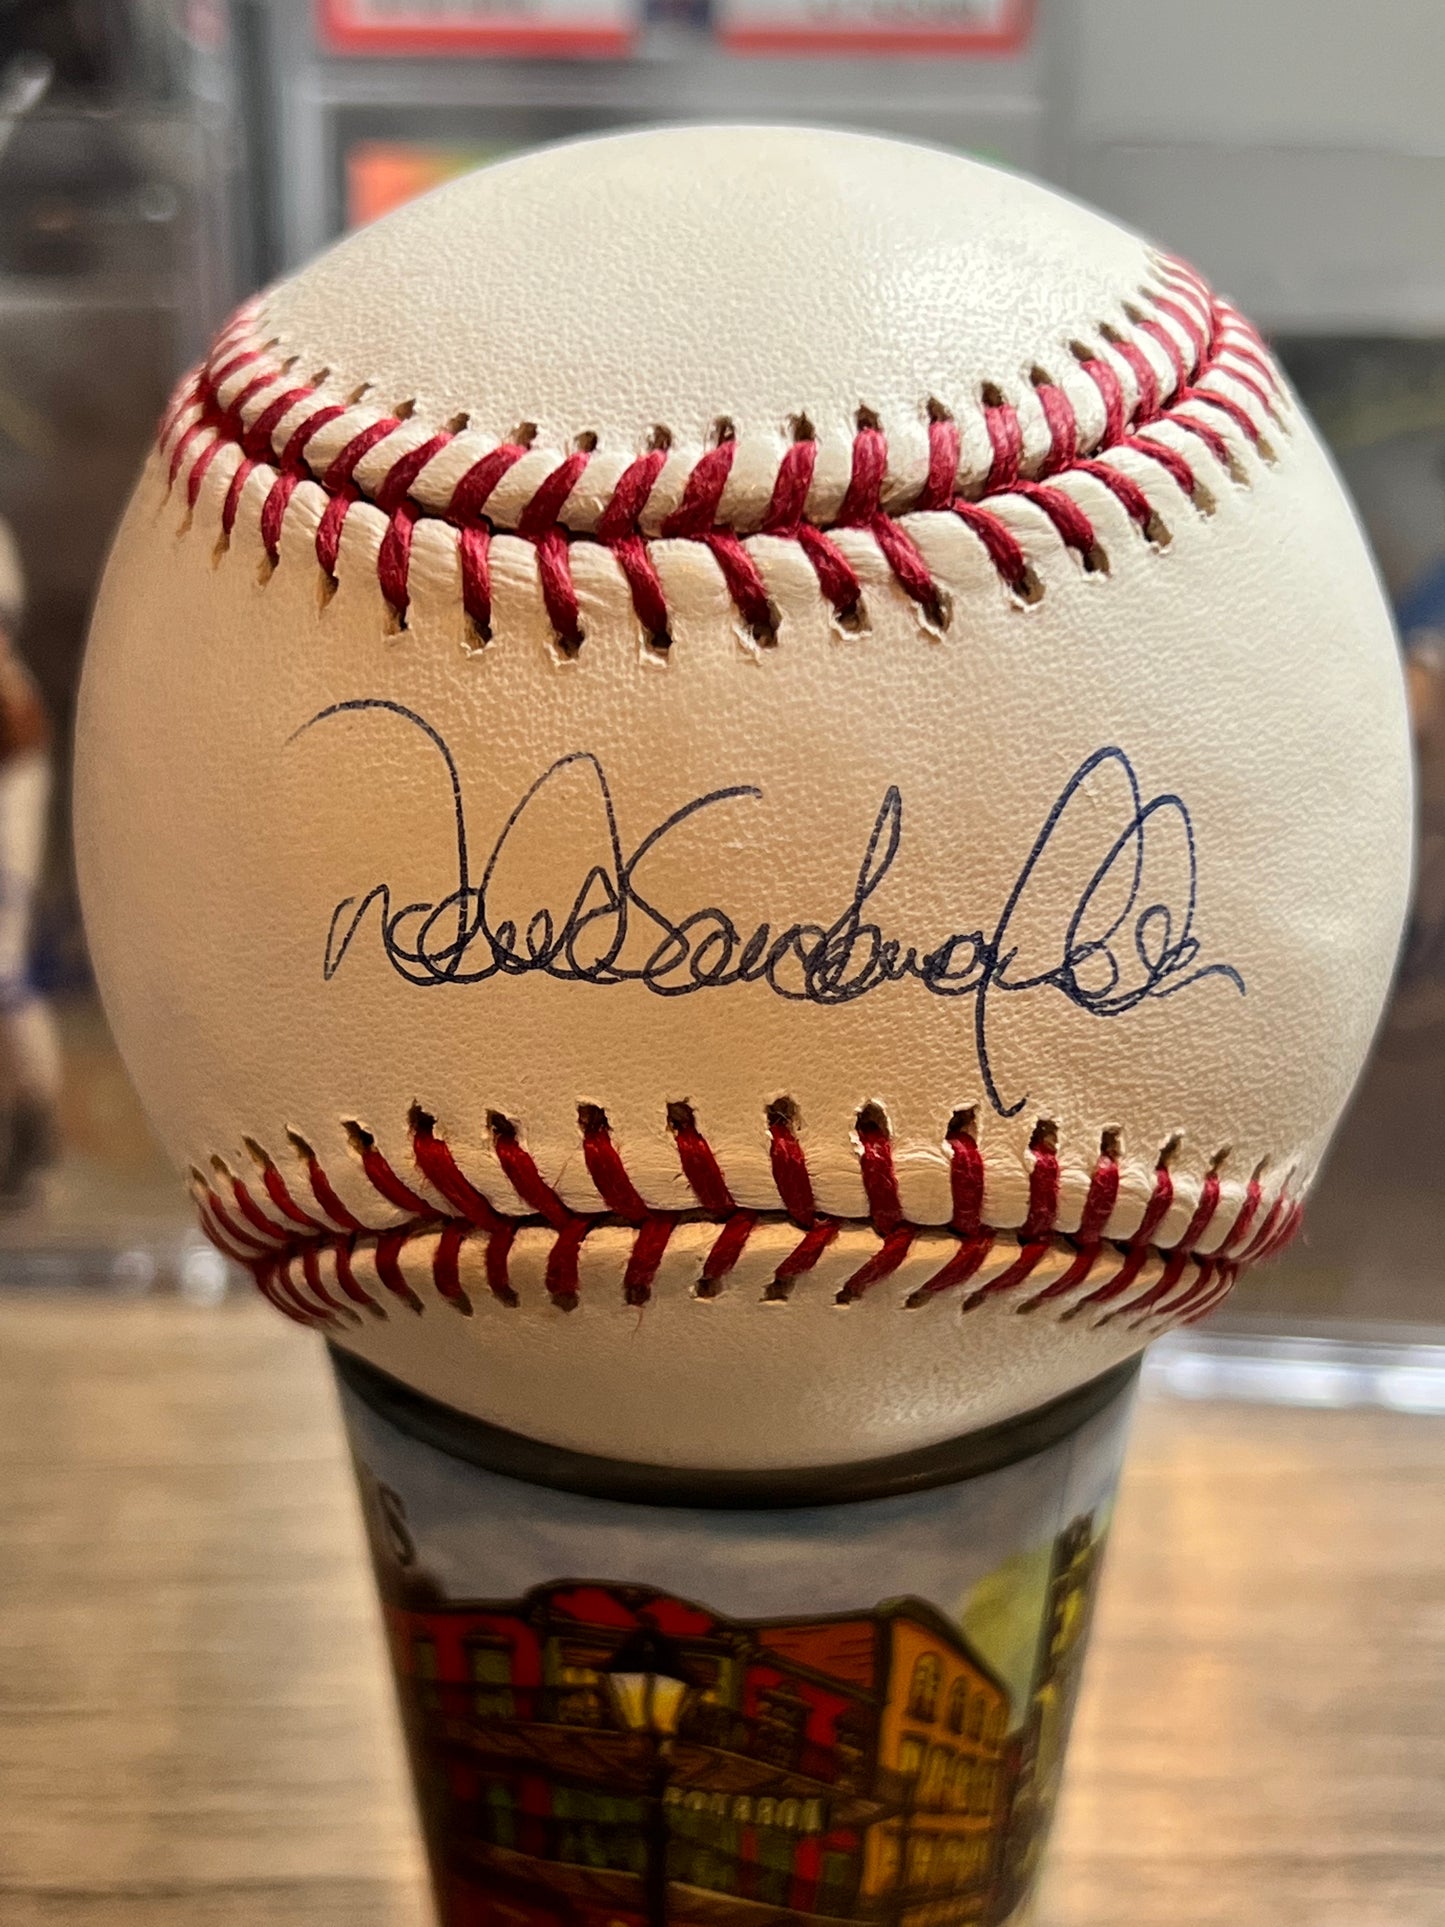 Derek Jeter Autographed Baseball(Full name)